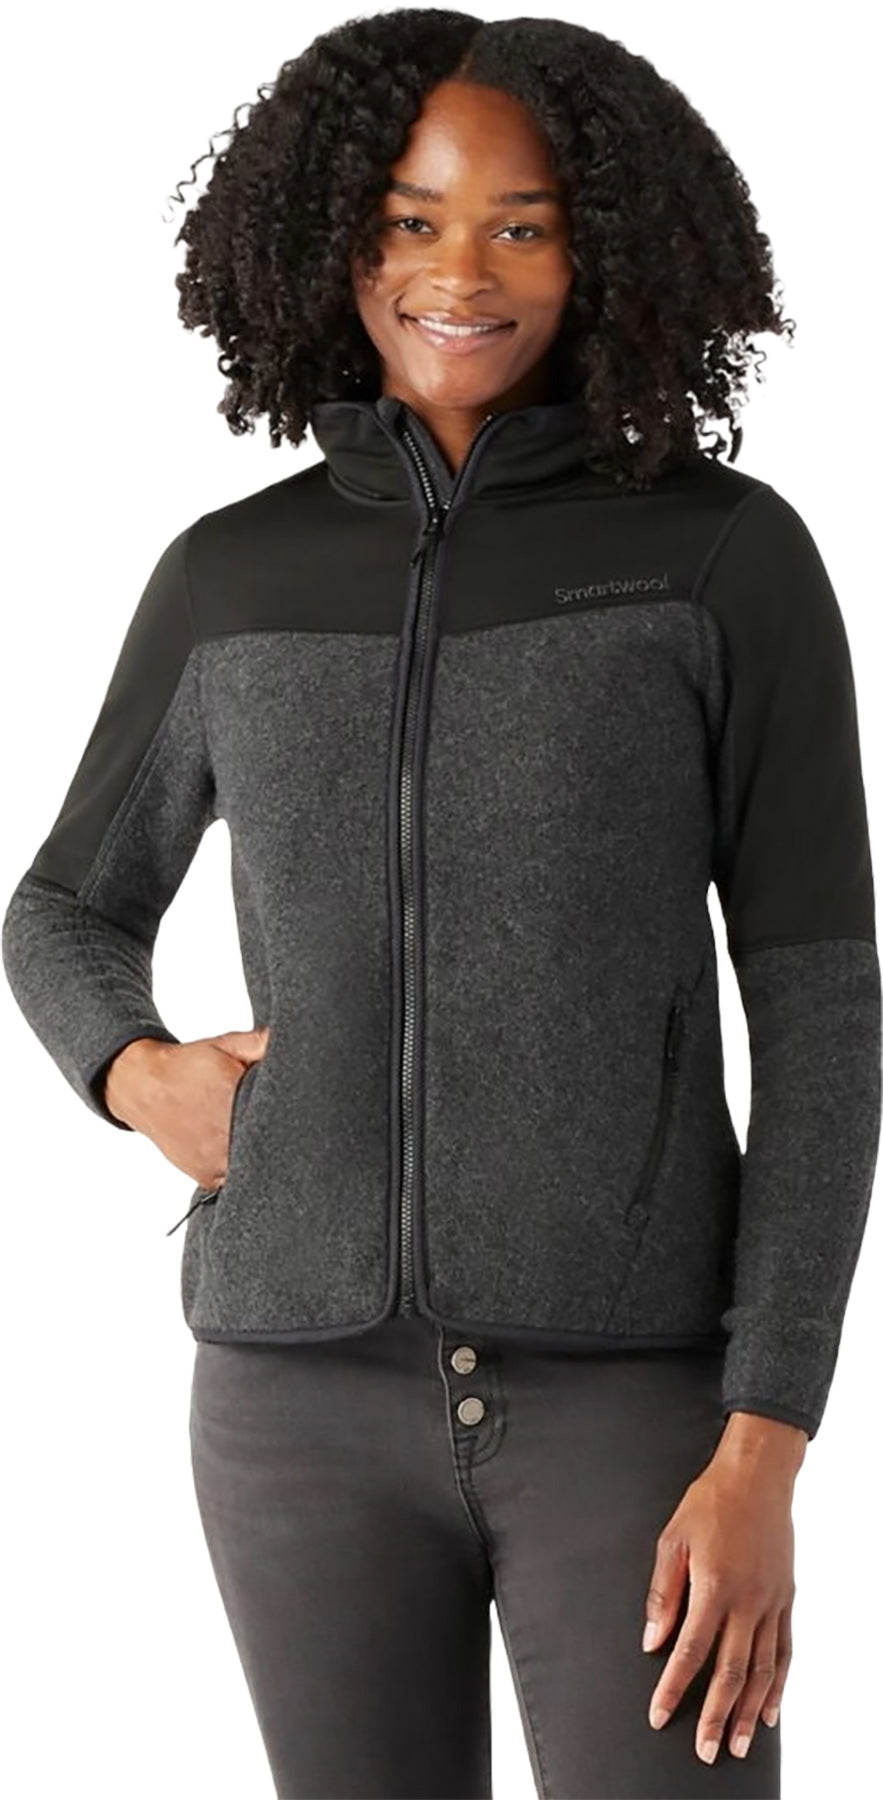 Smartwool Fleece Full Zip Jacket - Men's Hudson Trail Merino Wool